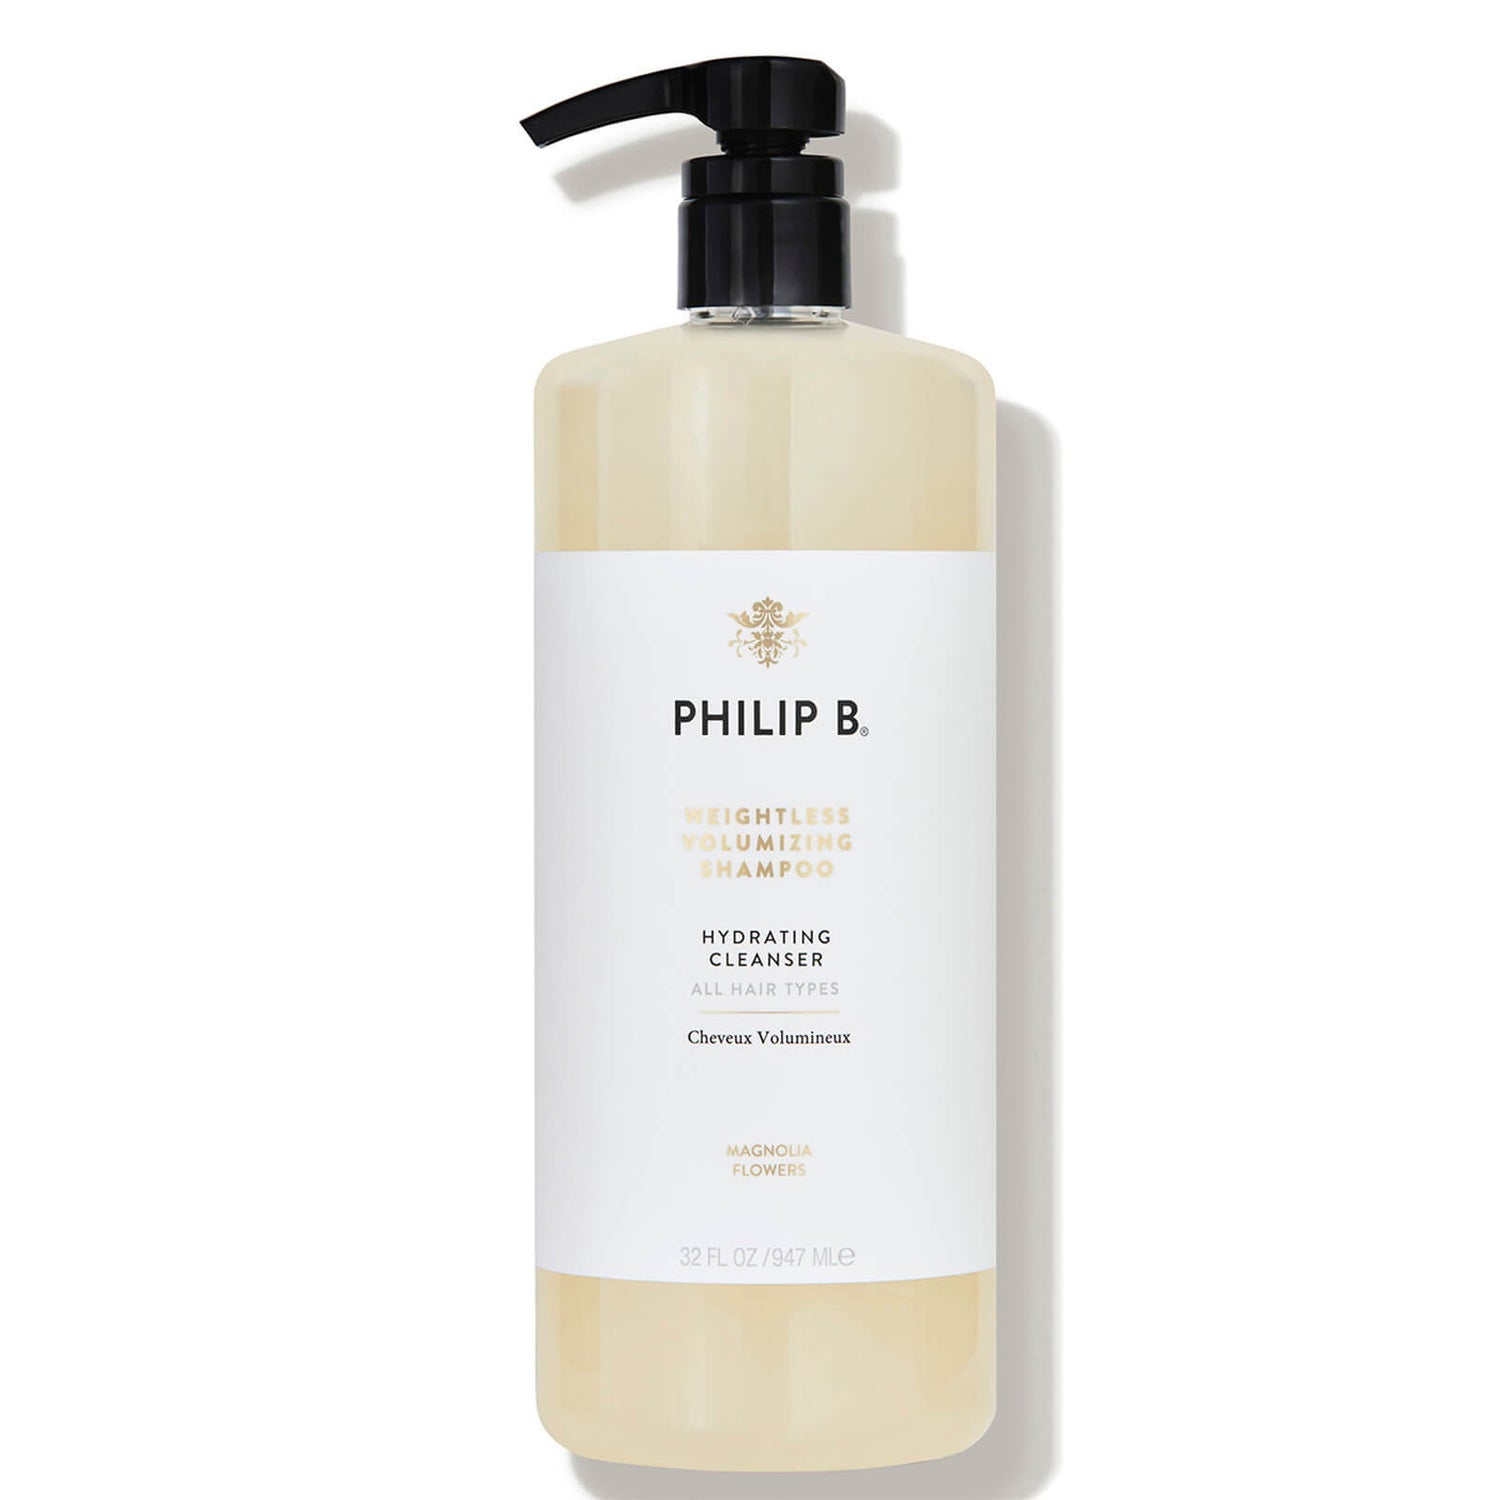 Philip B Weightless Volumising Shampoo 974ml - $115 Value